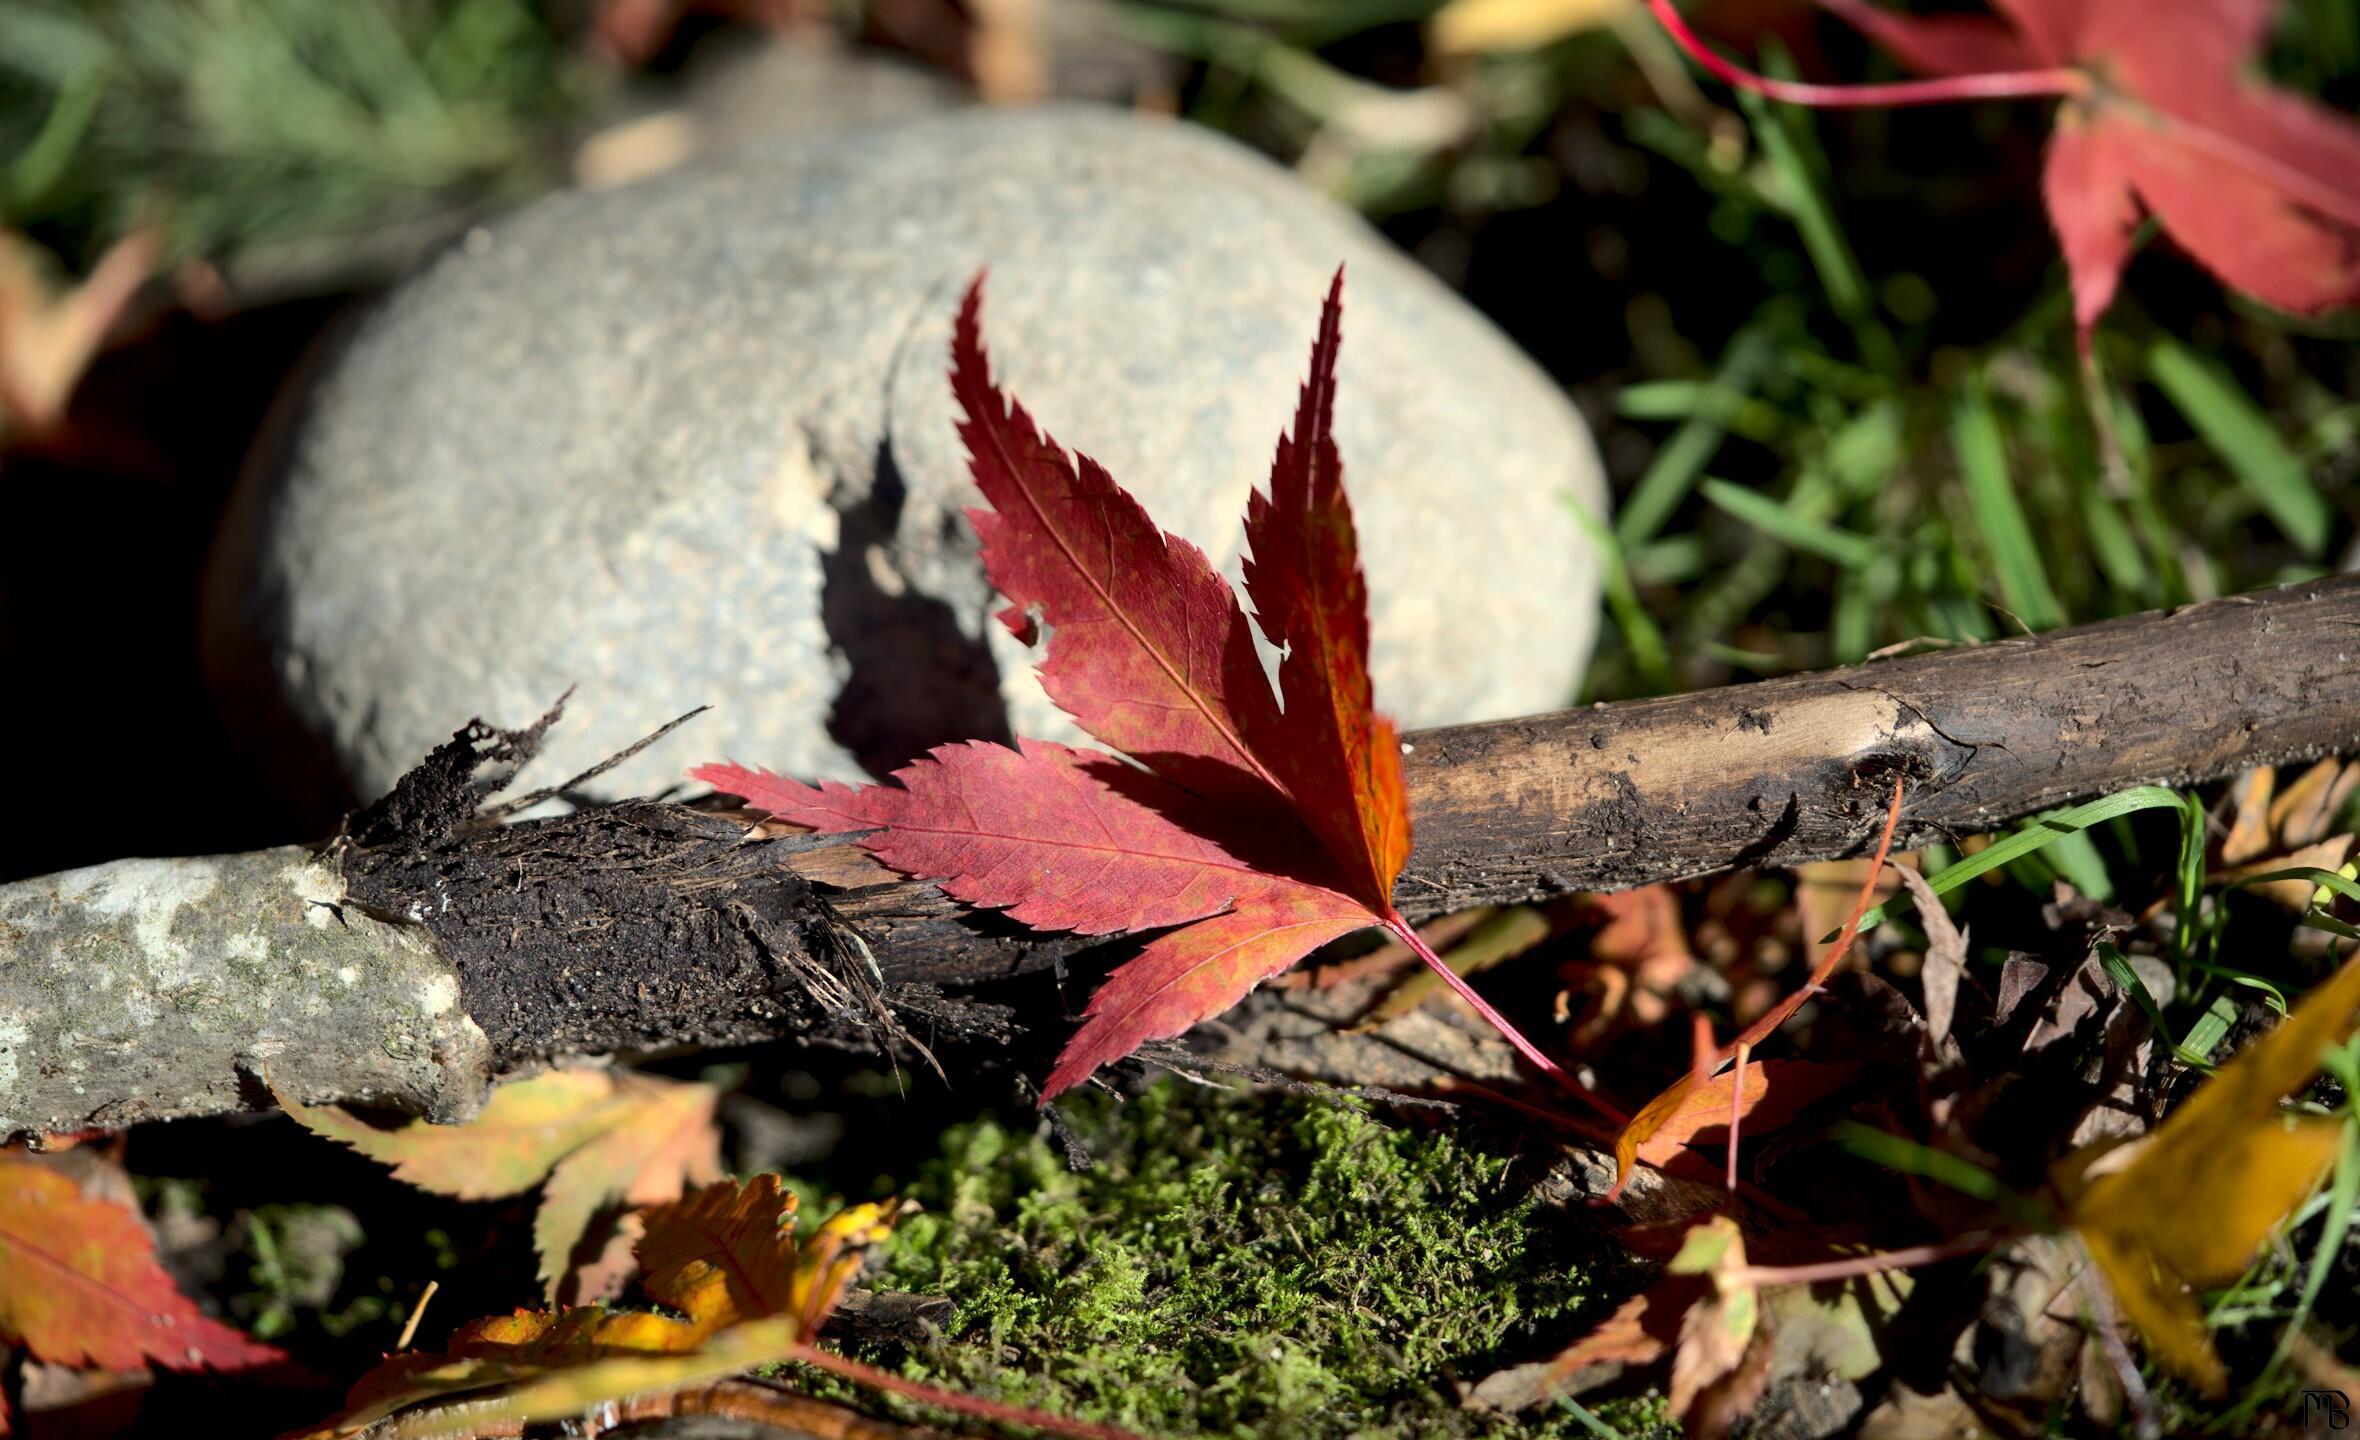 Red leaf near stone